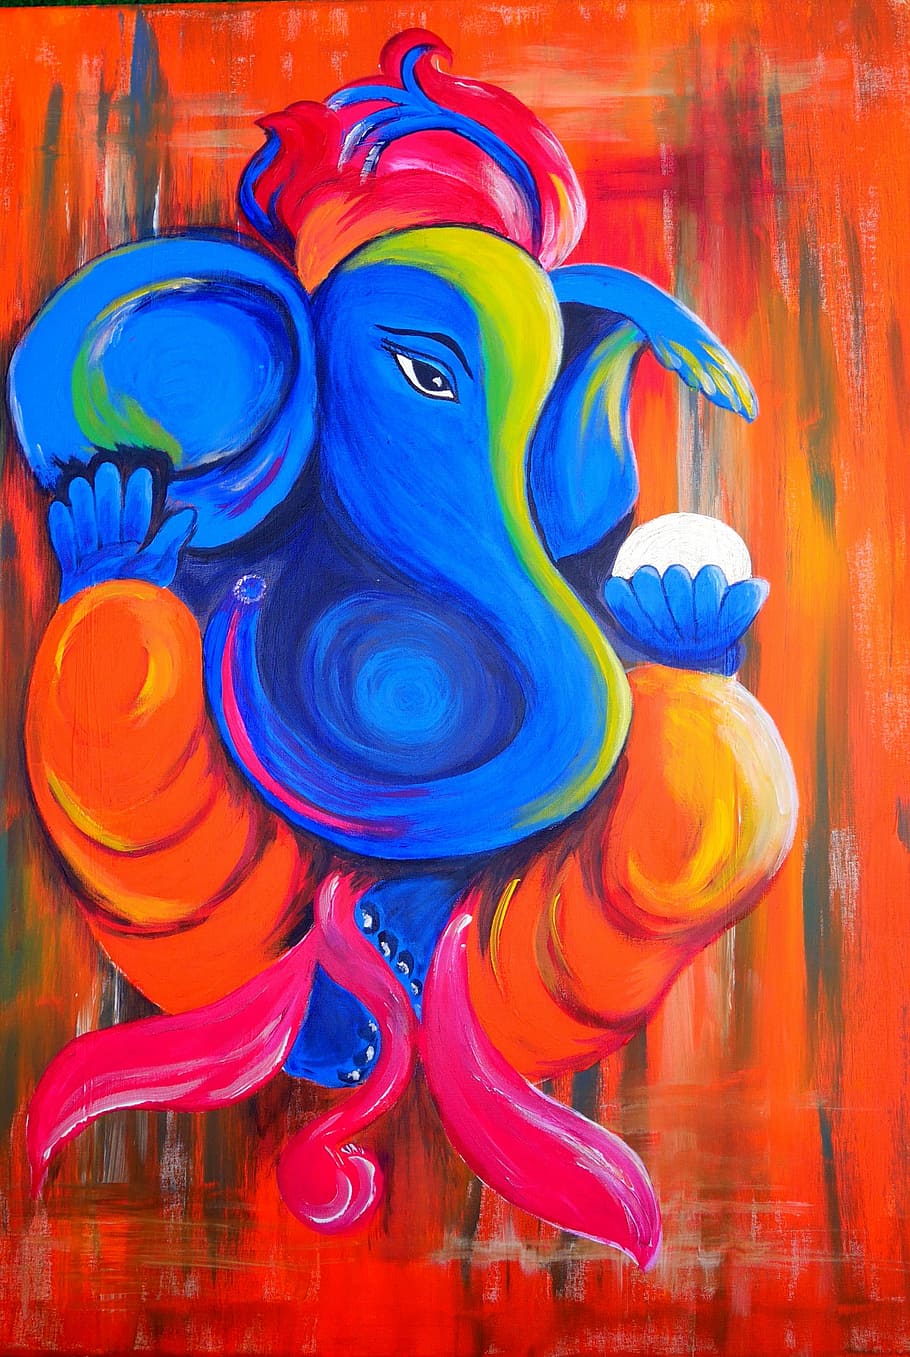 blue, yellow, red, and orange elephant painting, ganesha, god